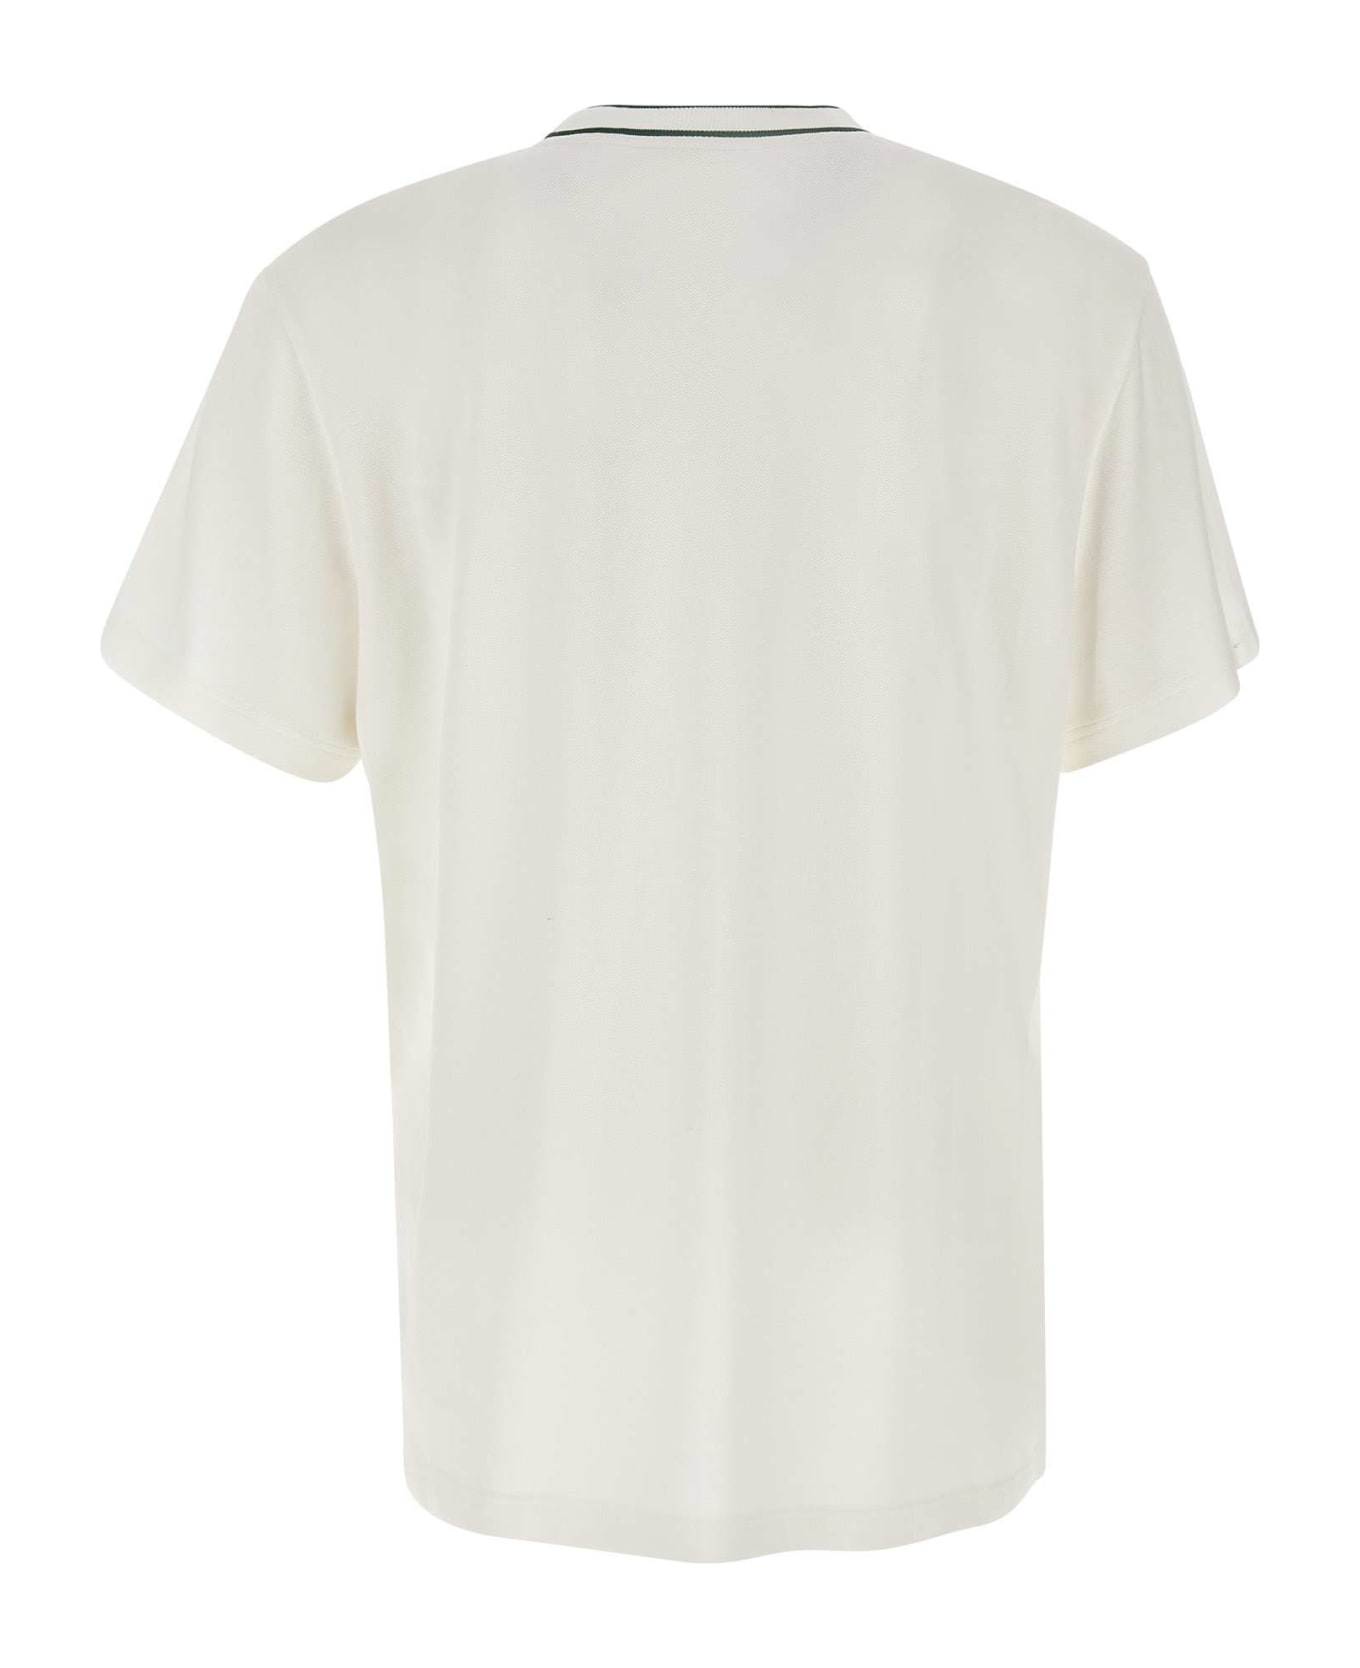 Lacoste Cotton T-shirt - WHITE